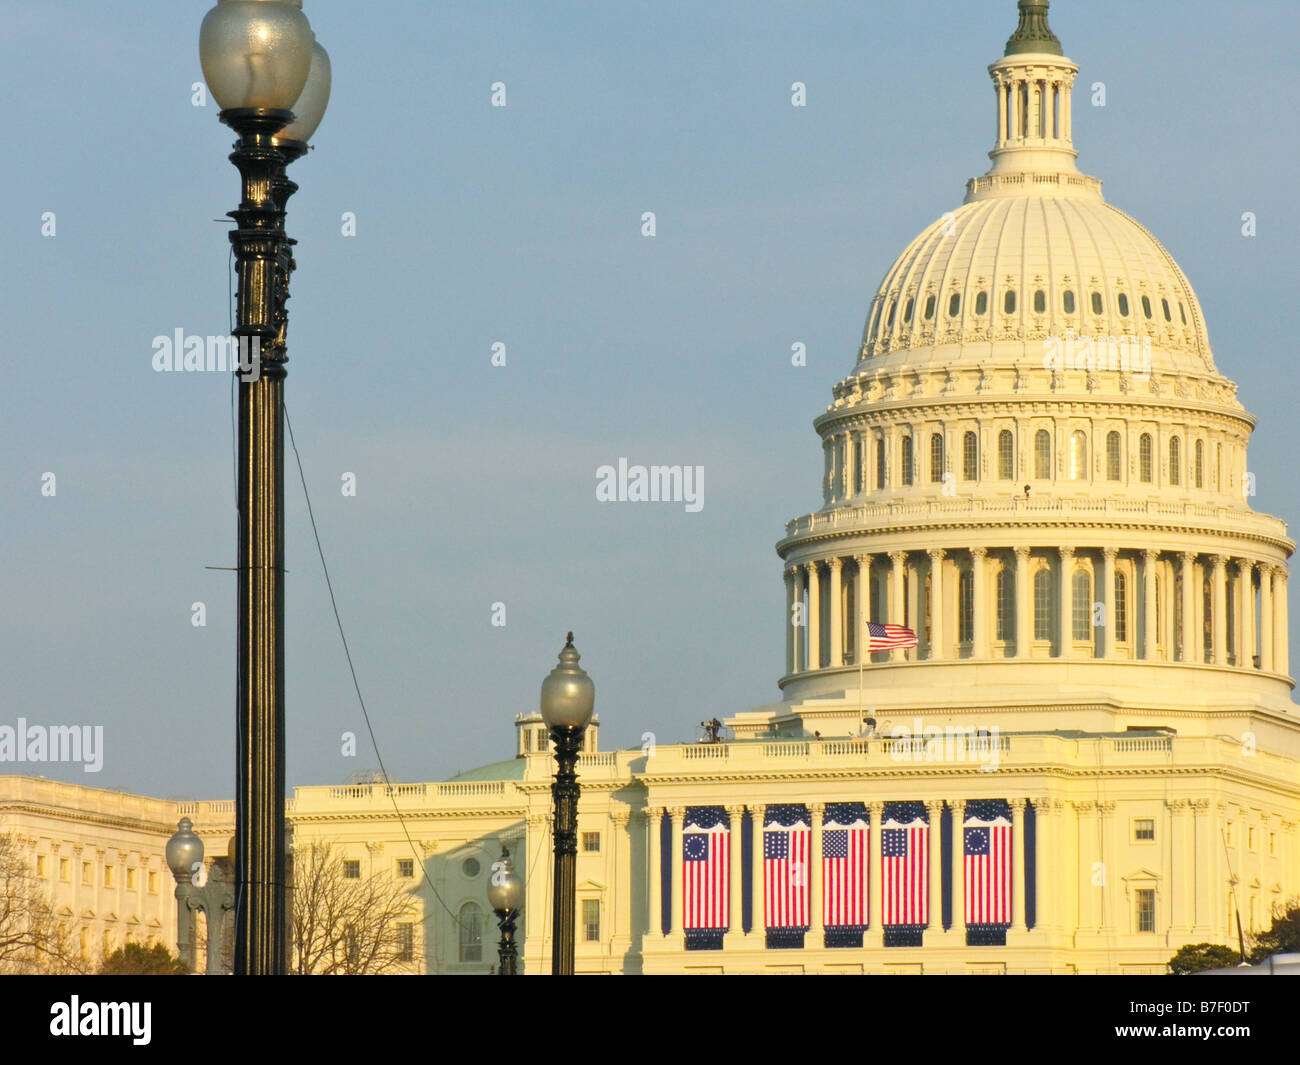 Fin de la journée, la lumière se réchauffe le dôme des États-Unis Capitol, qui est décorée de drapeaux sur Obama's Inauguration Day. Banque D'Images